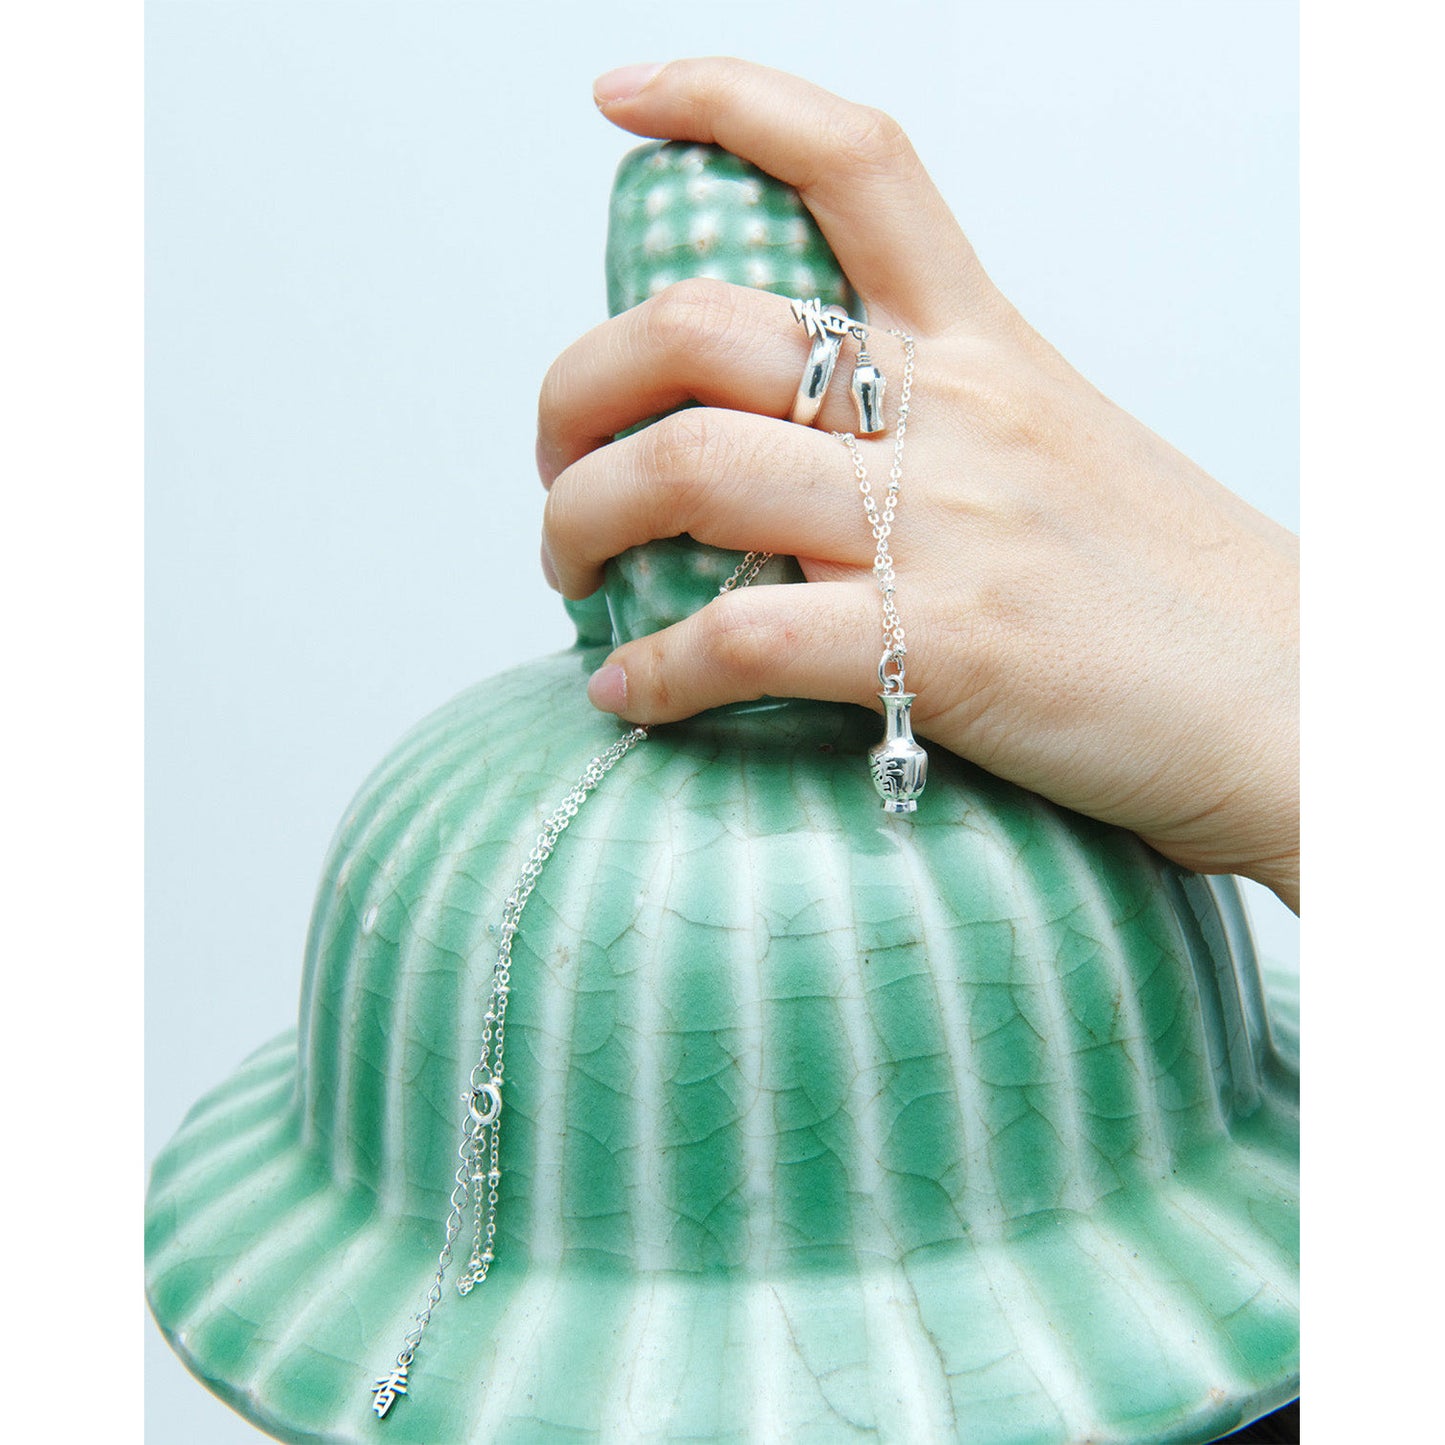 香 Fragrant Vase necklace